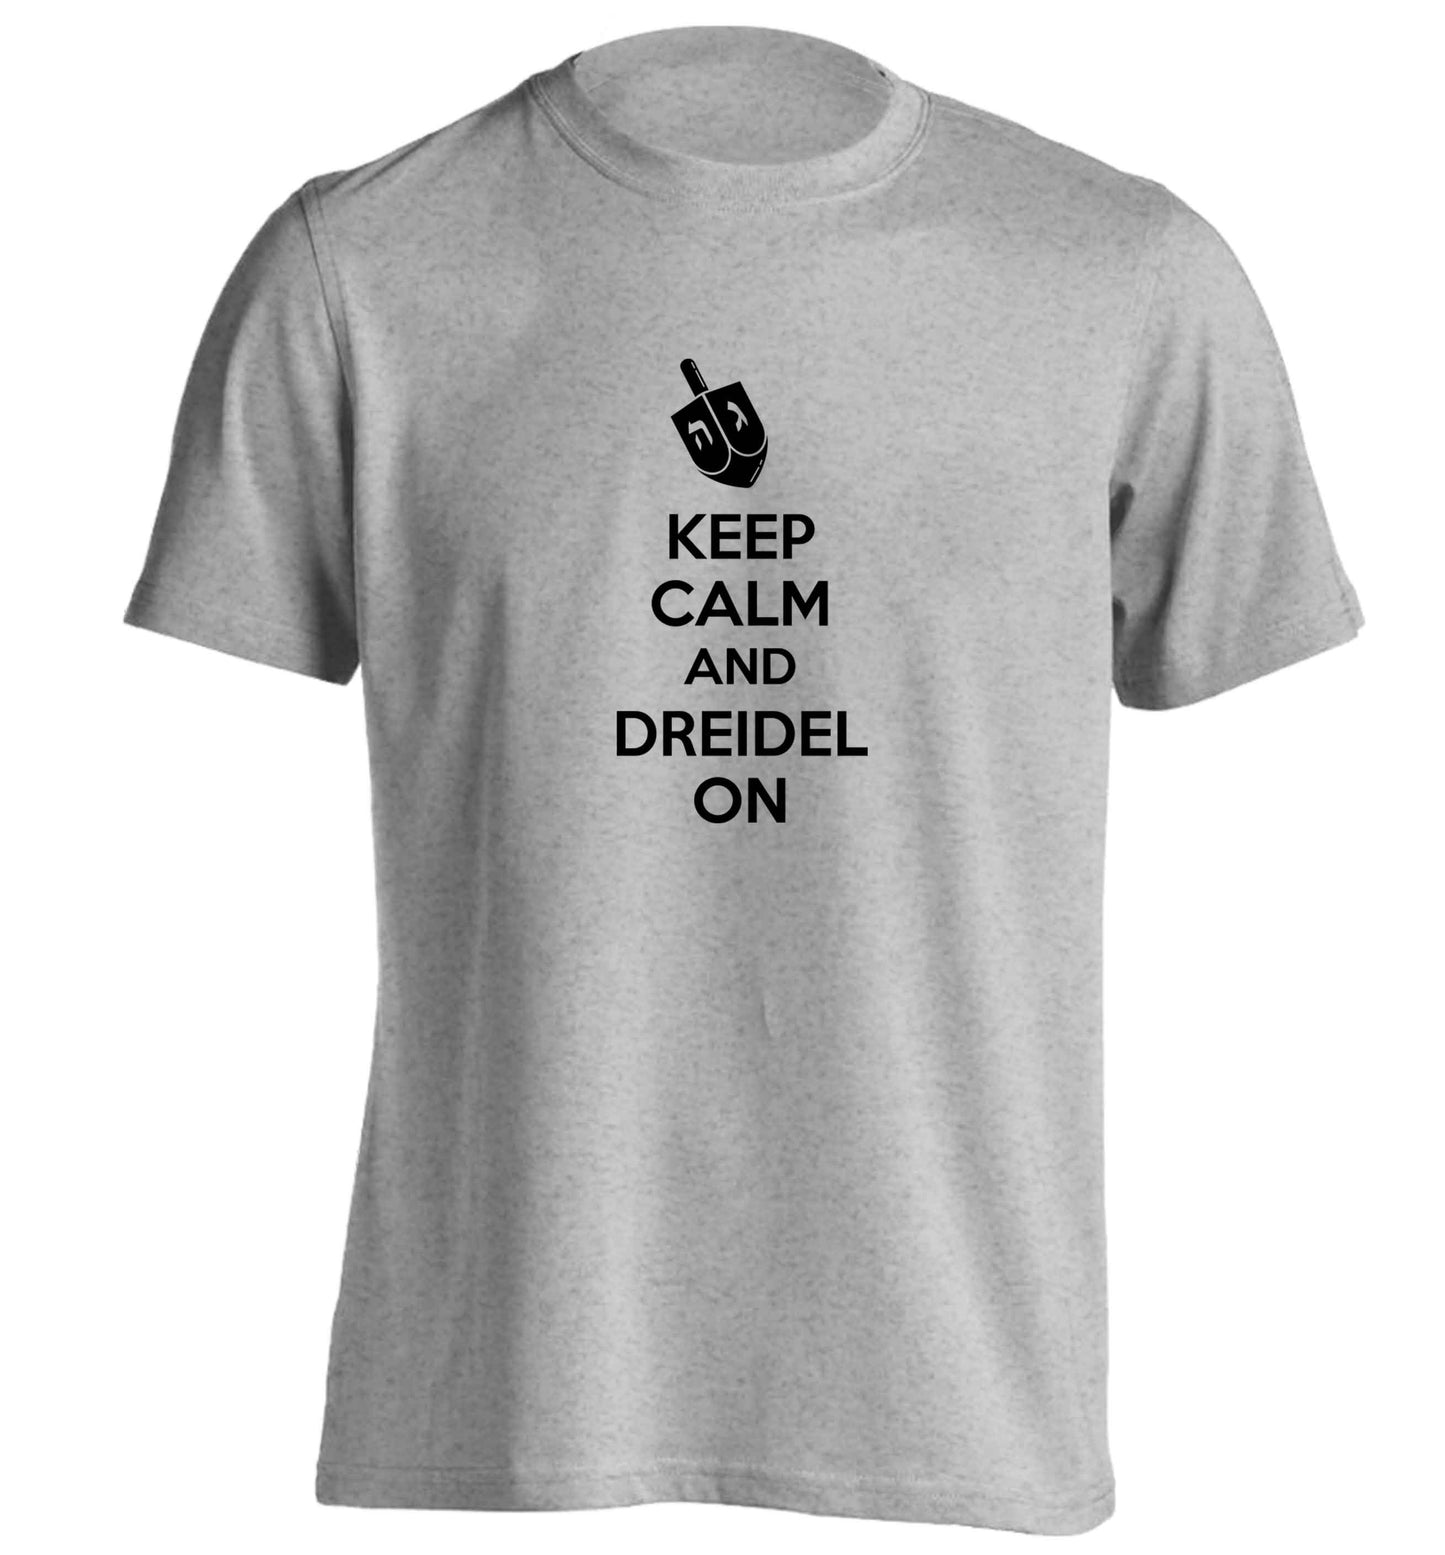 Keep calm and dreidel on adults unisex grey Tshirt 2XL